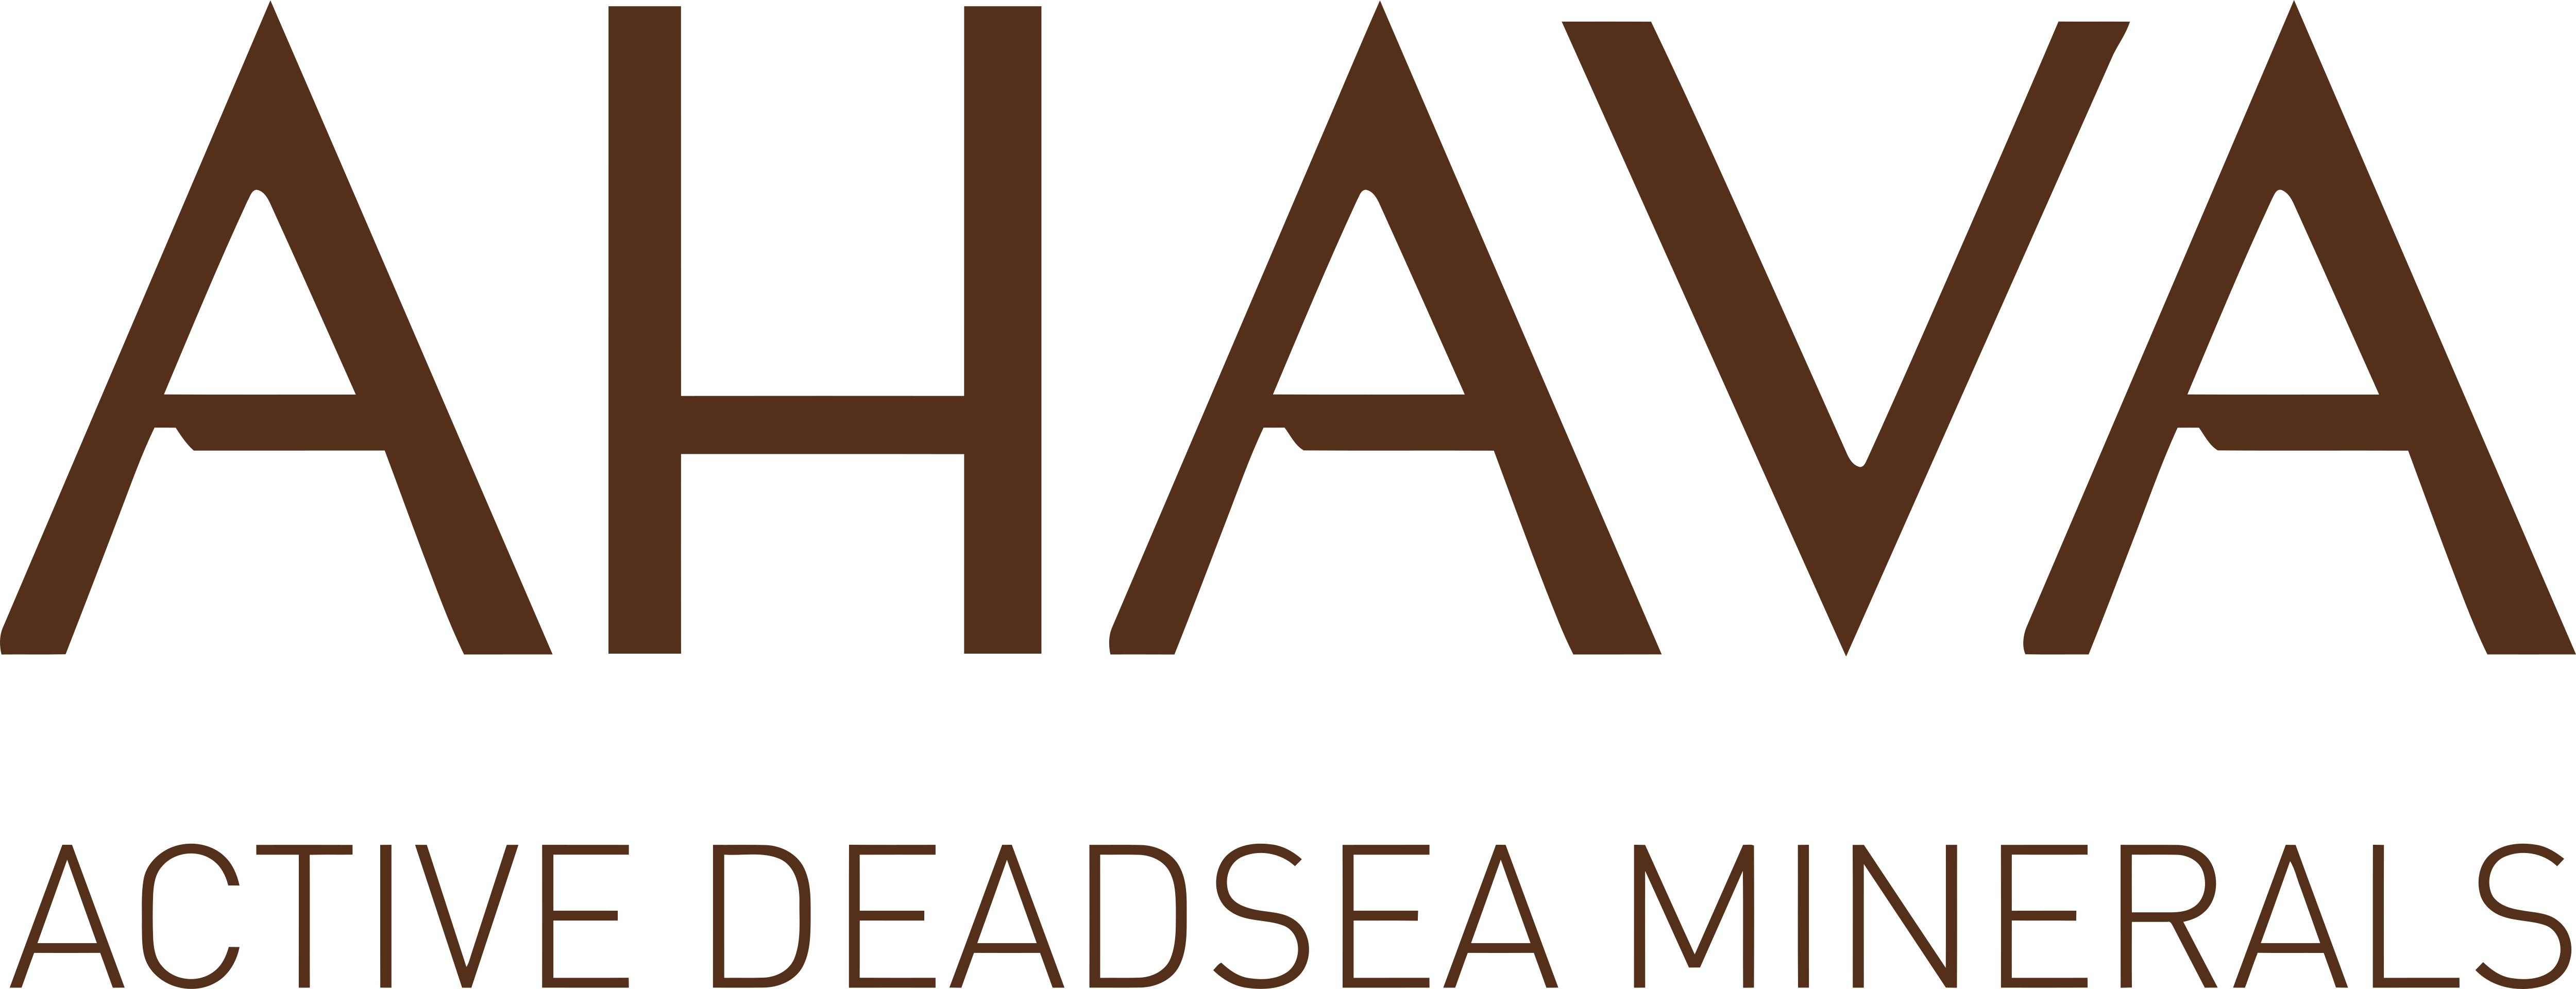 https://hbdeadsea.com.ua/image/catalog/logo/ahava.png